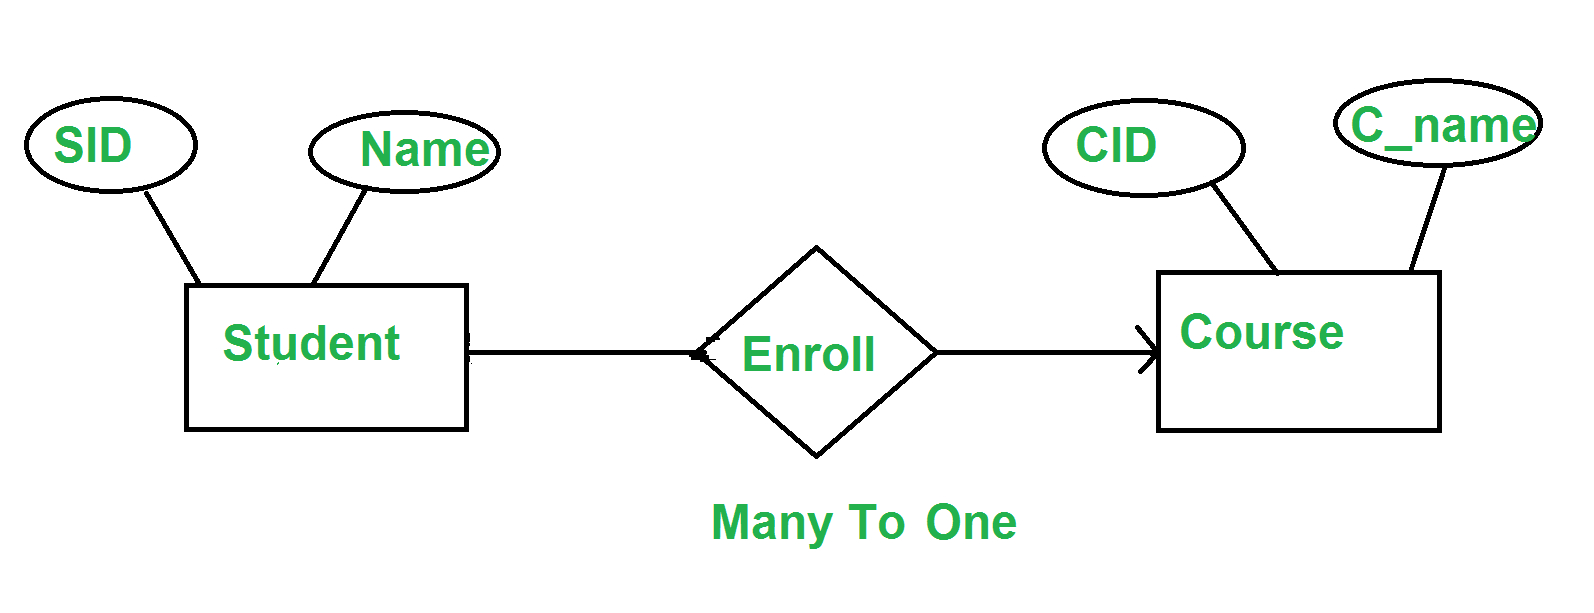 Minimization Of Er Diagrams - Geeksforgeeks regarding Erd One To One